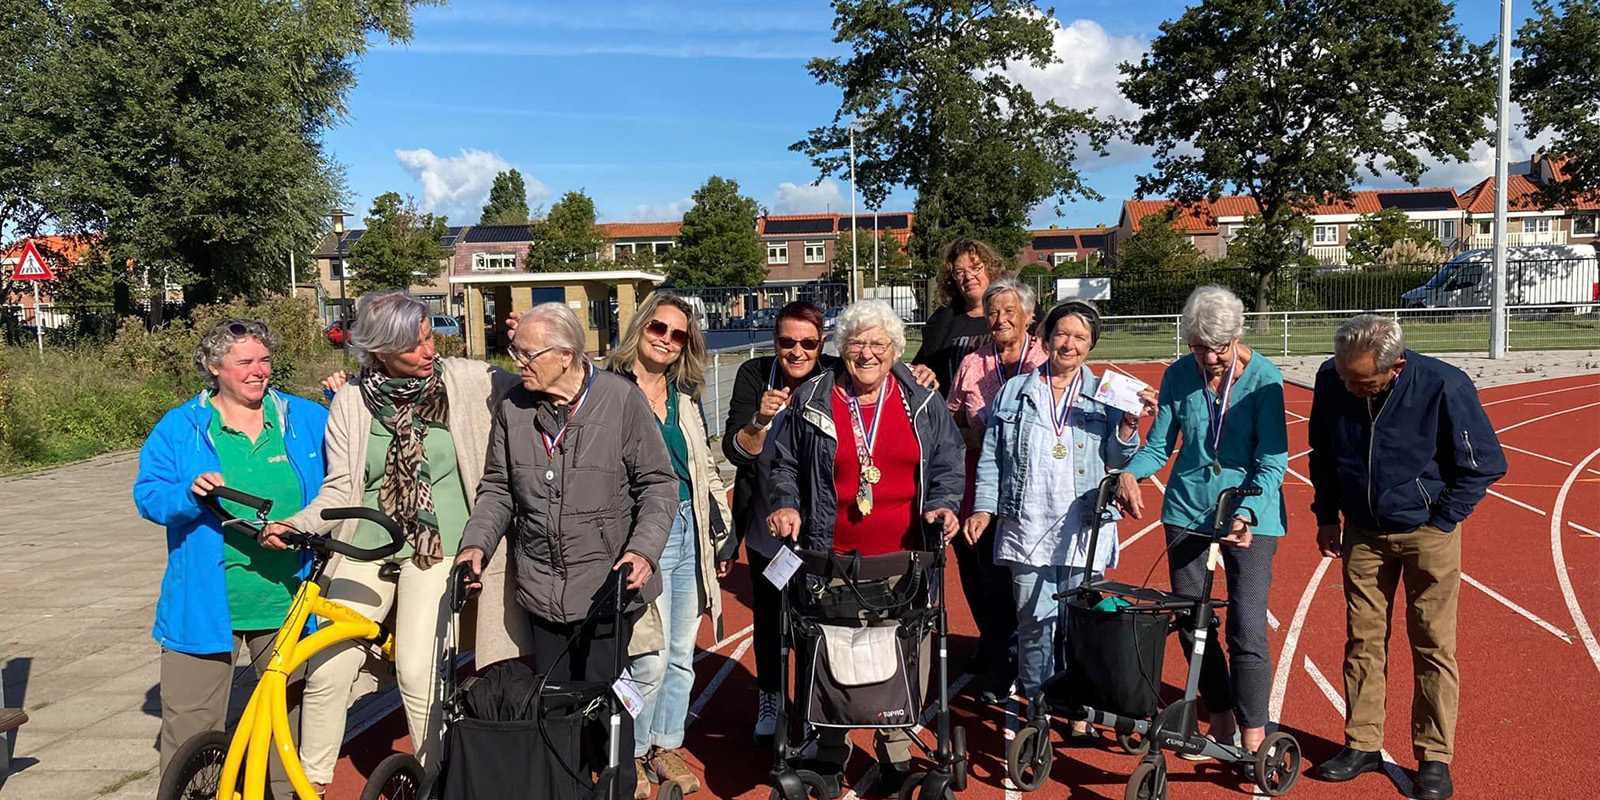 Bewoners van Het Houwinghuis, woonzorglocatie voor mensen met dementie, op de atletiekbaan in Den Helder na afloop van de Helderse Rollatorloop. Ze laten trots hun medailles zien.